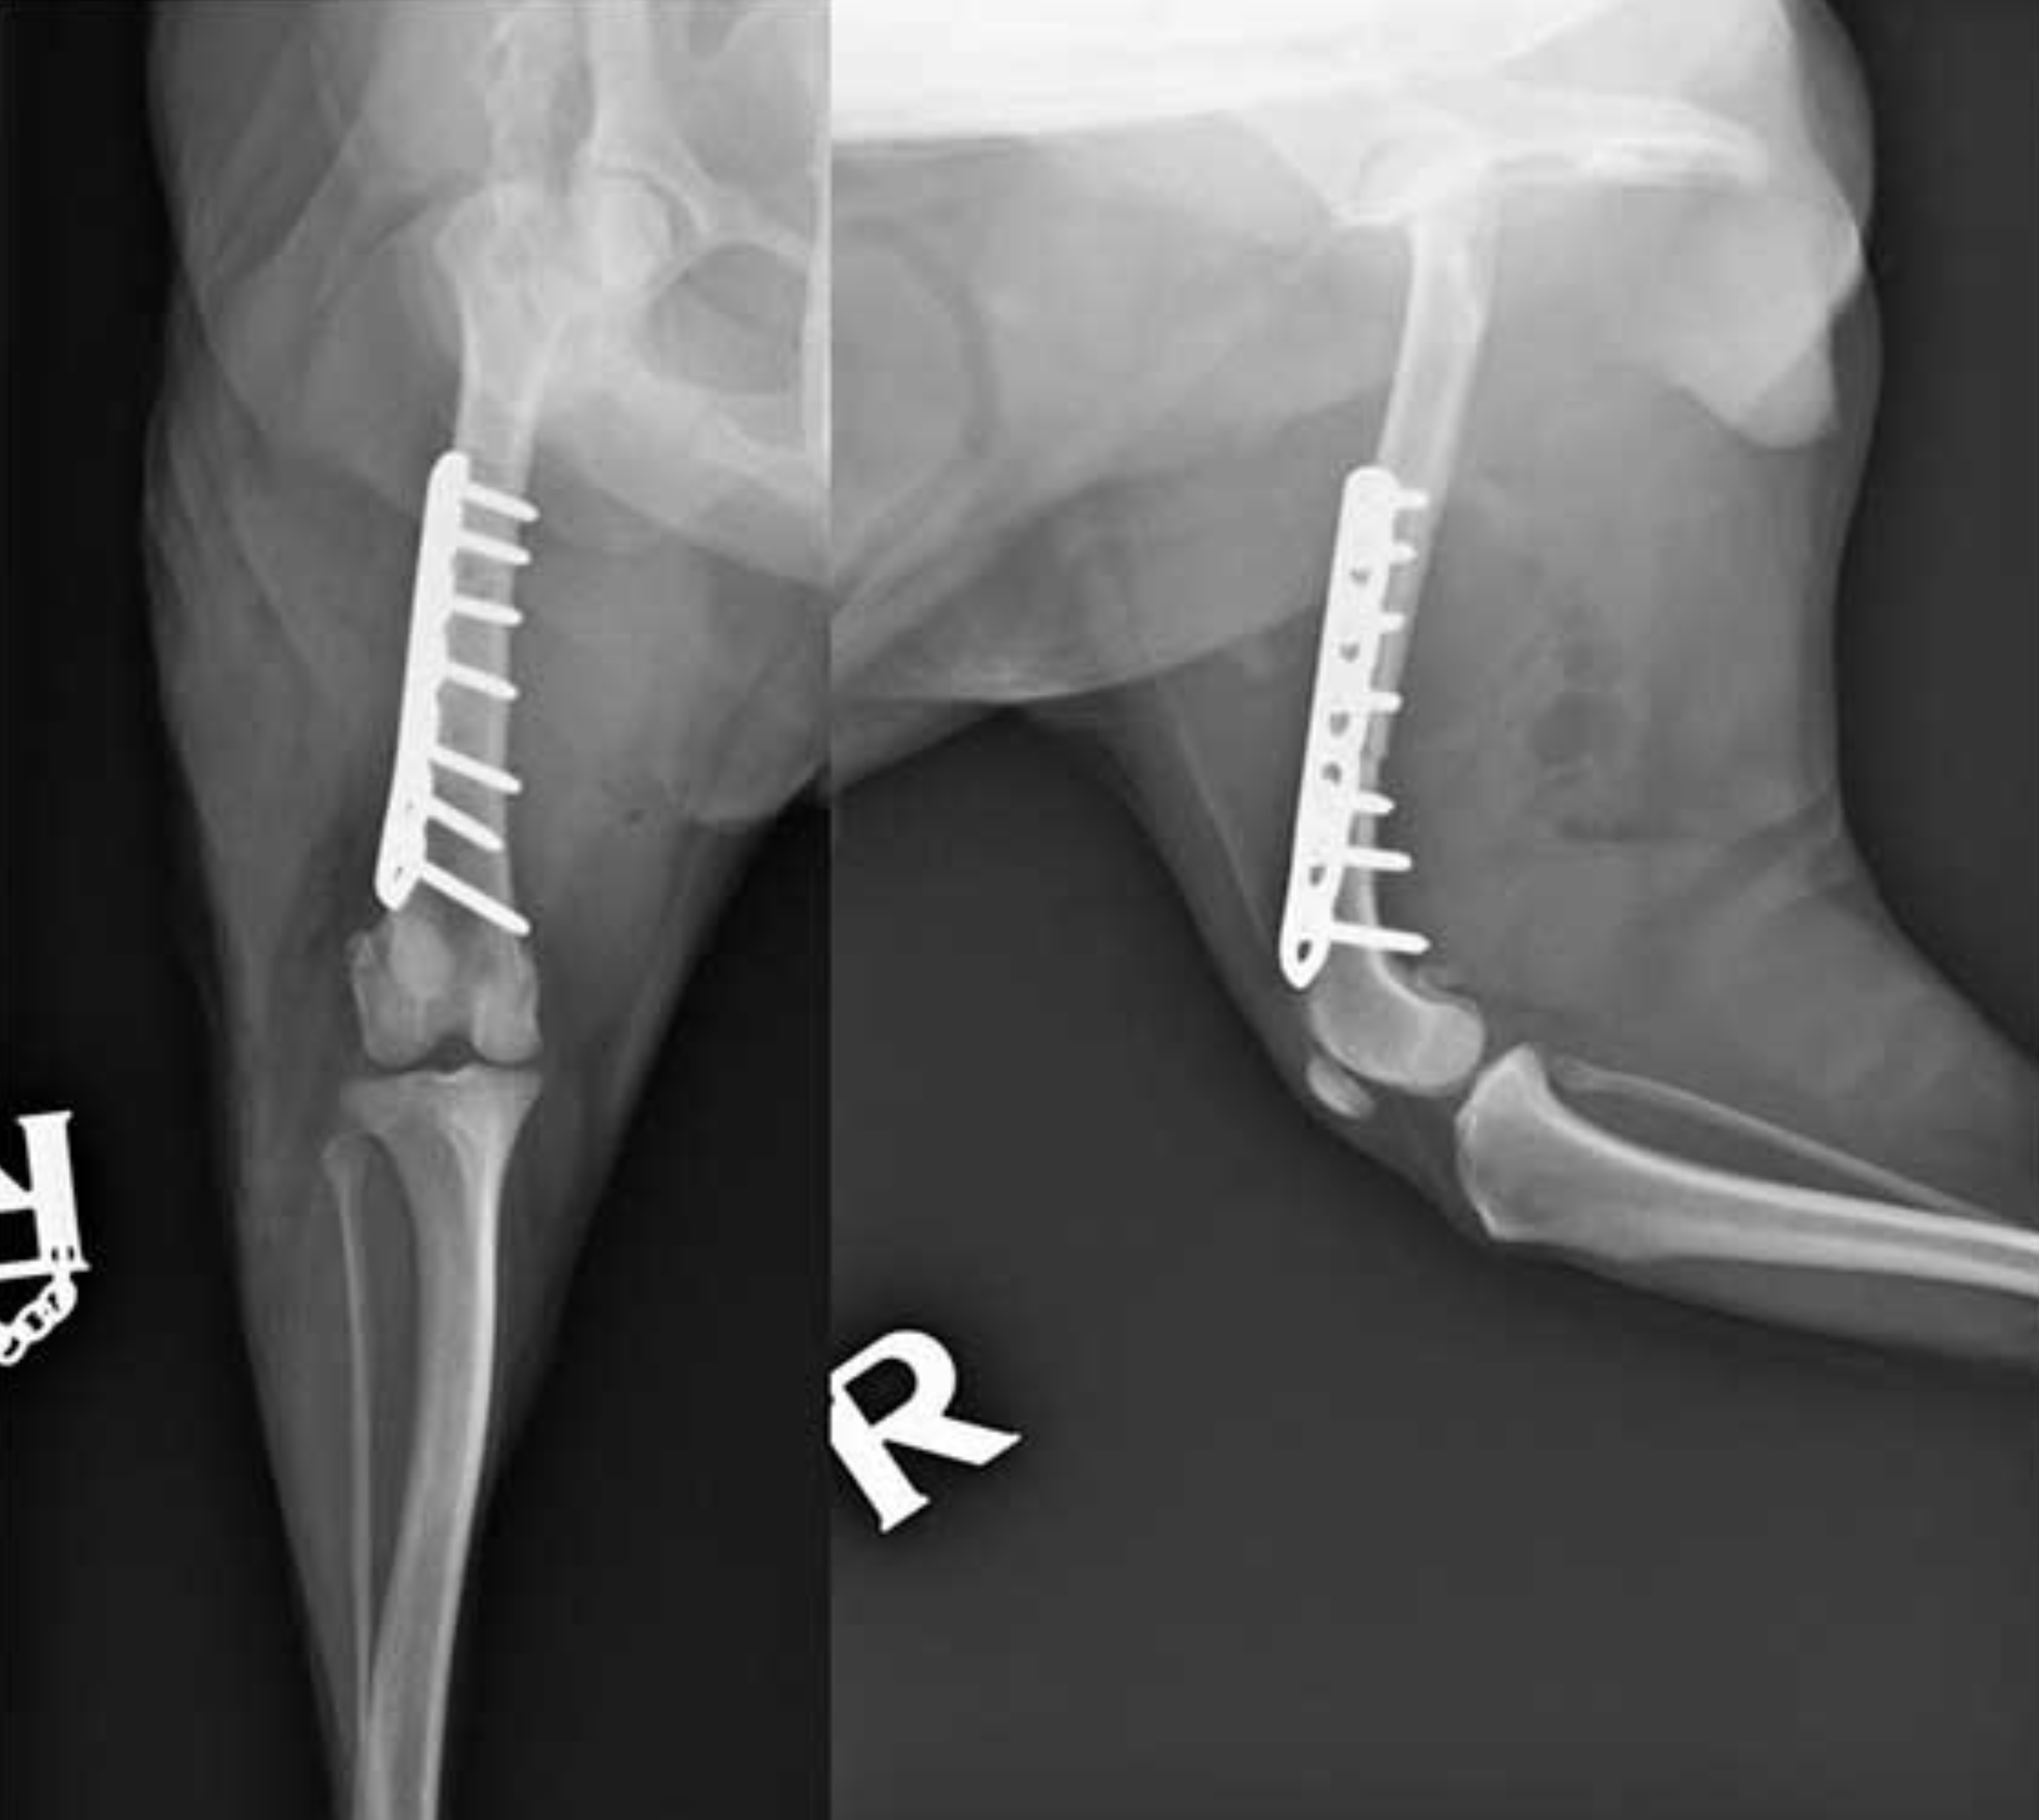 AXON COMUNICACION,Osteotomía femoral distal para el tratamiento de la retroversión femoral